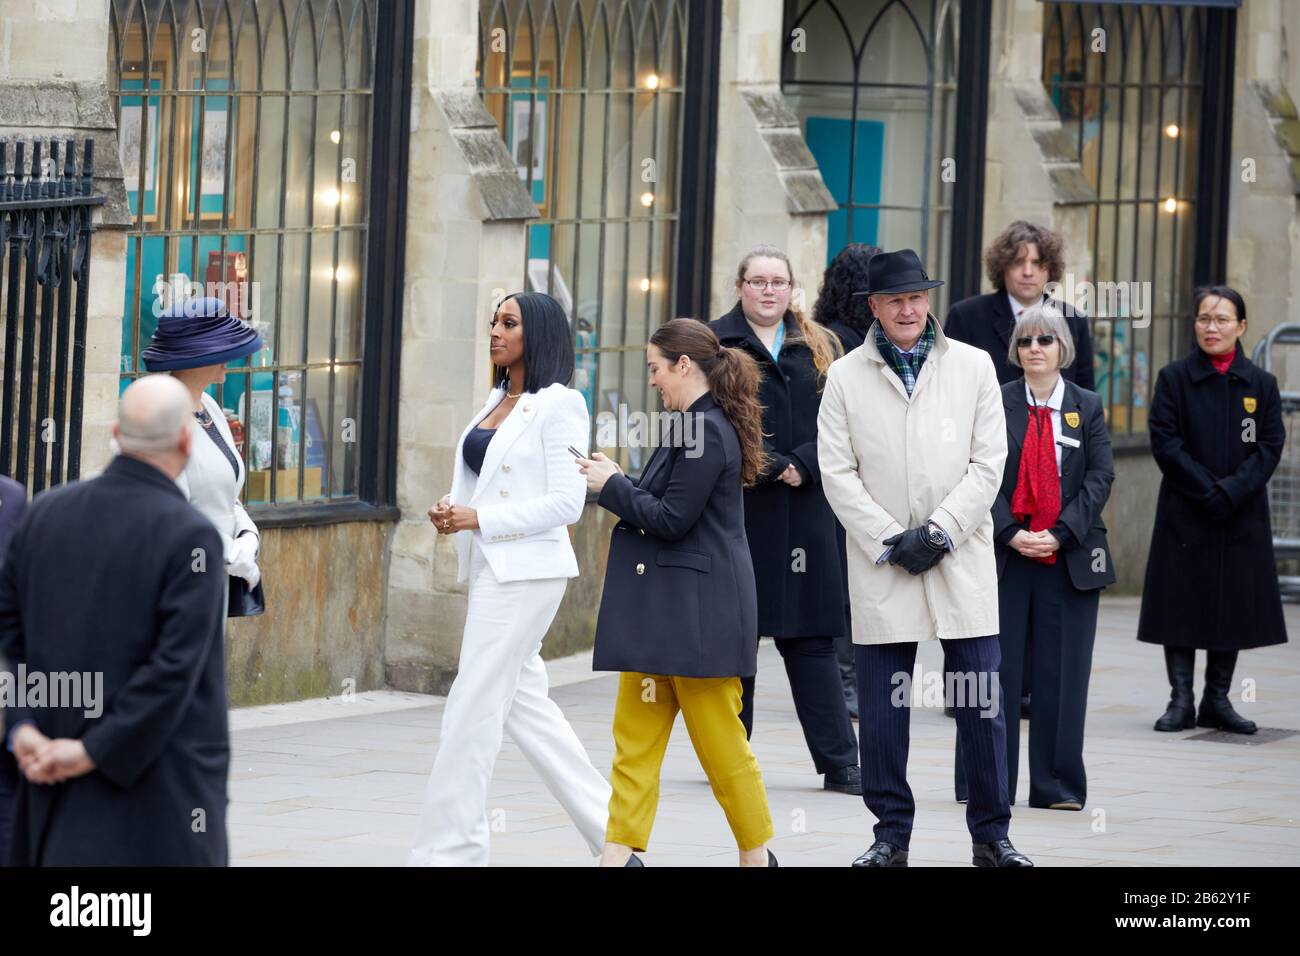 Londres, Reino Unido - 9 de marzo de 2020: La cantante Alexandra Burke (tercera a la izquierda, vestida de blanco) llega para el Servicio de día del Commonwealth en la Abadía de Westminster. Foto de stock